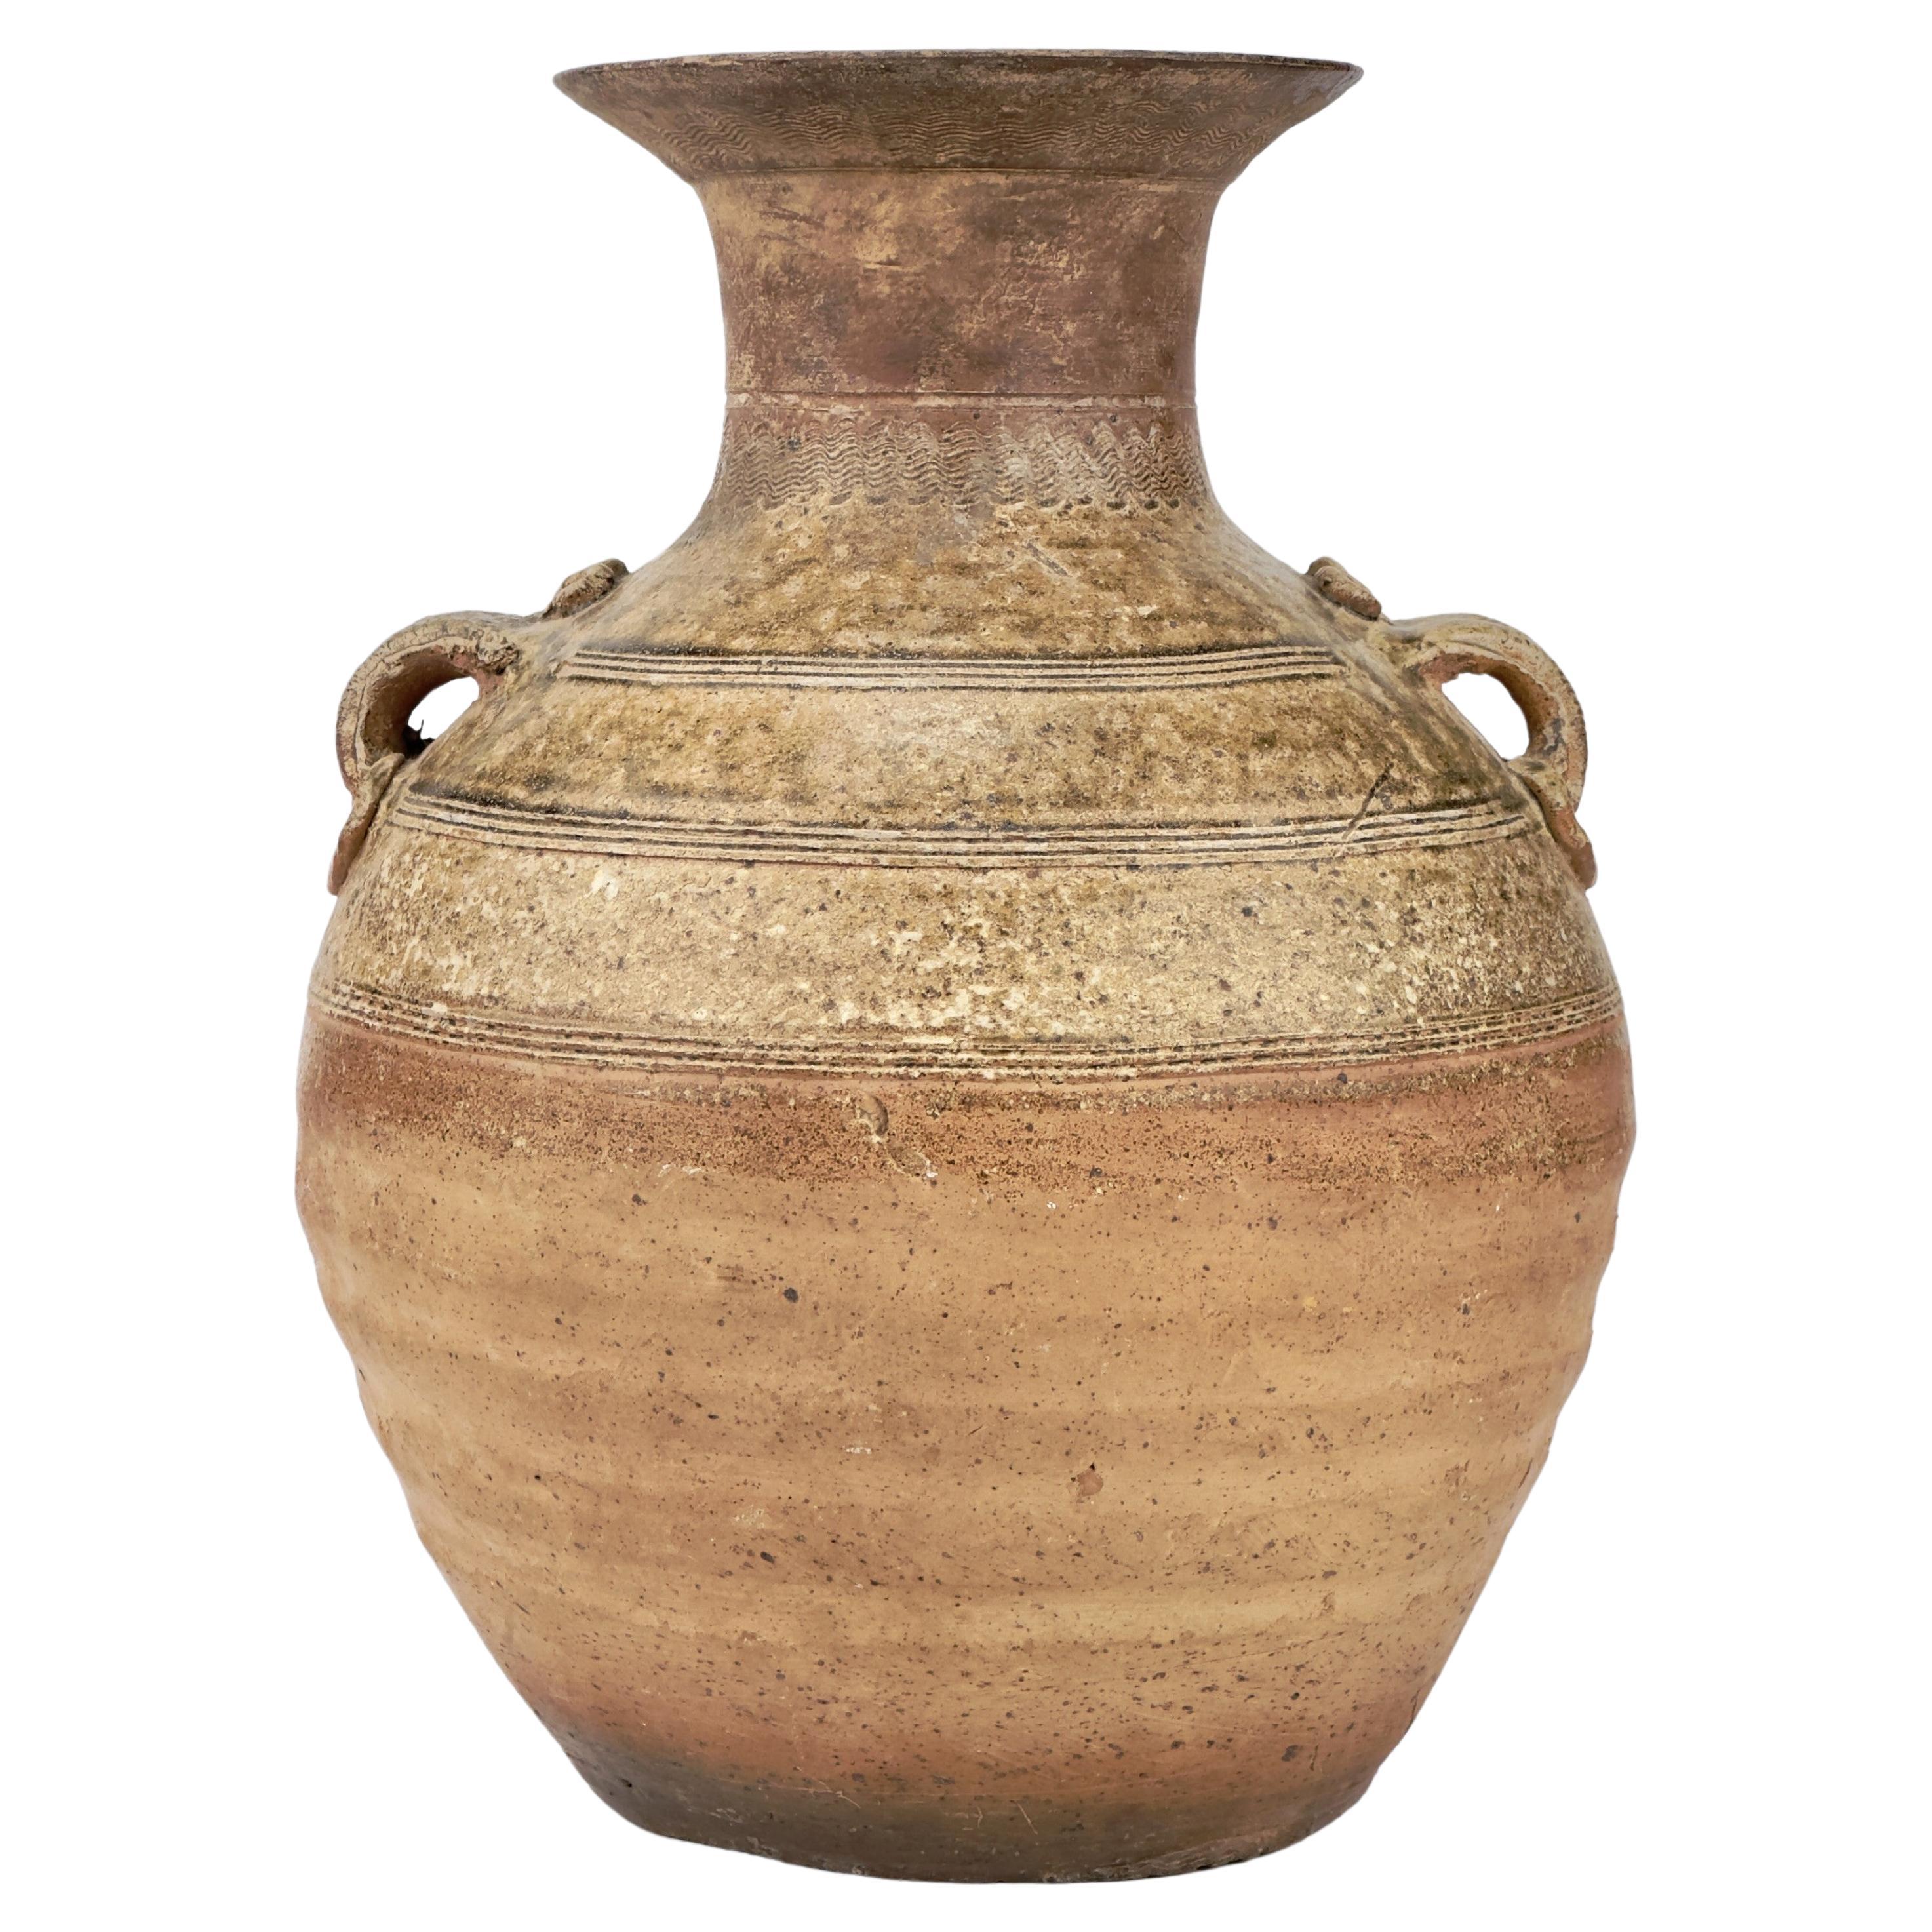 A Green-Glazed Stoneware Jar (Hu Vessel), Han Dynasty